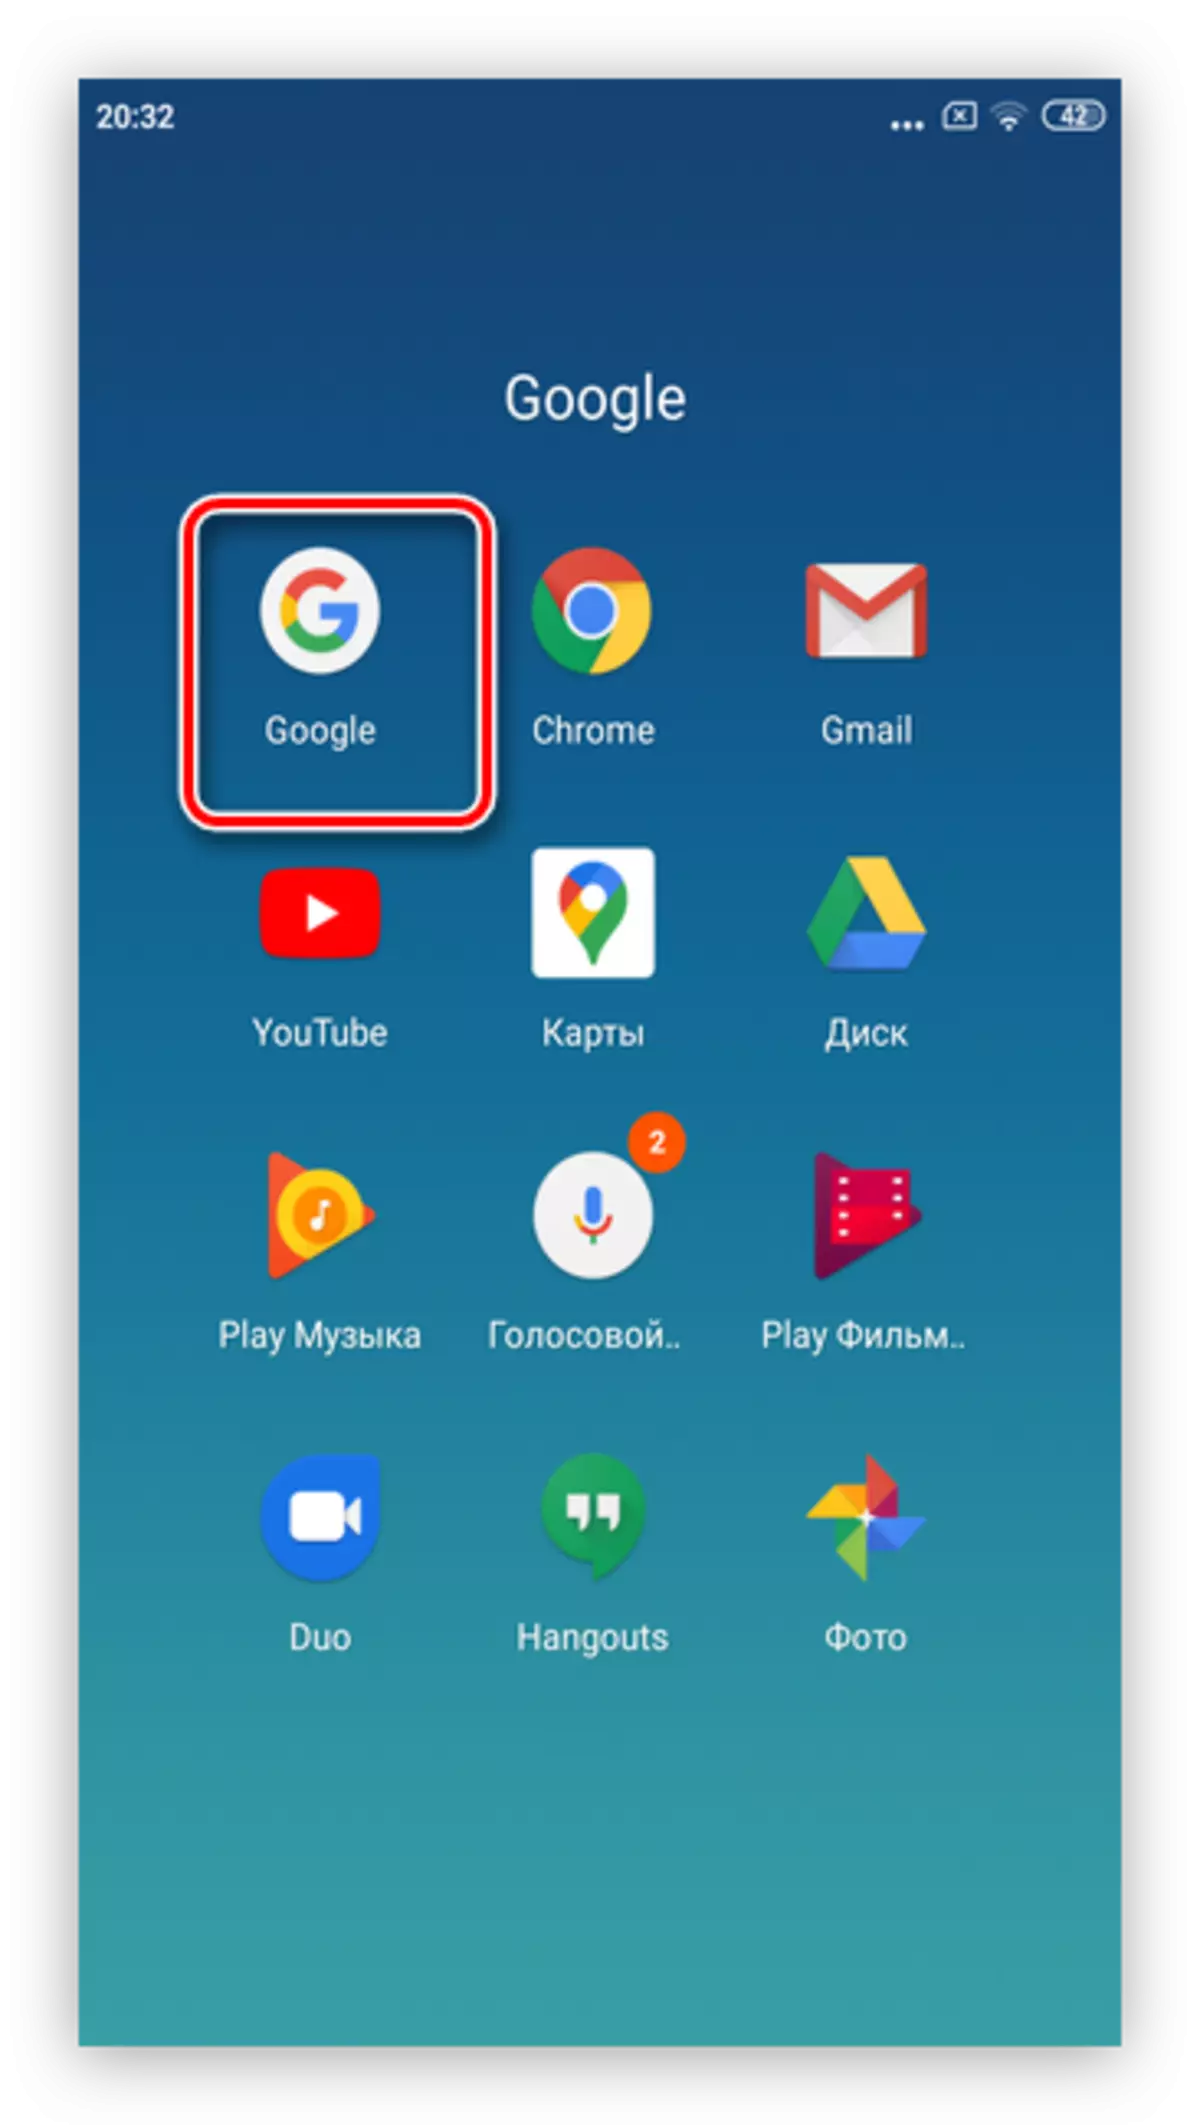 Բացեք Google ծրագիրը `համակարգի միջոցով Android սմարթֆոնների վրա Google գովազդը հանելու համար